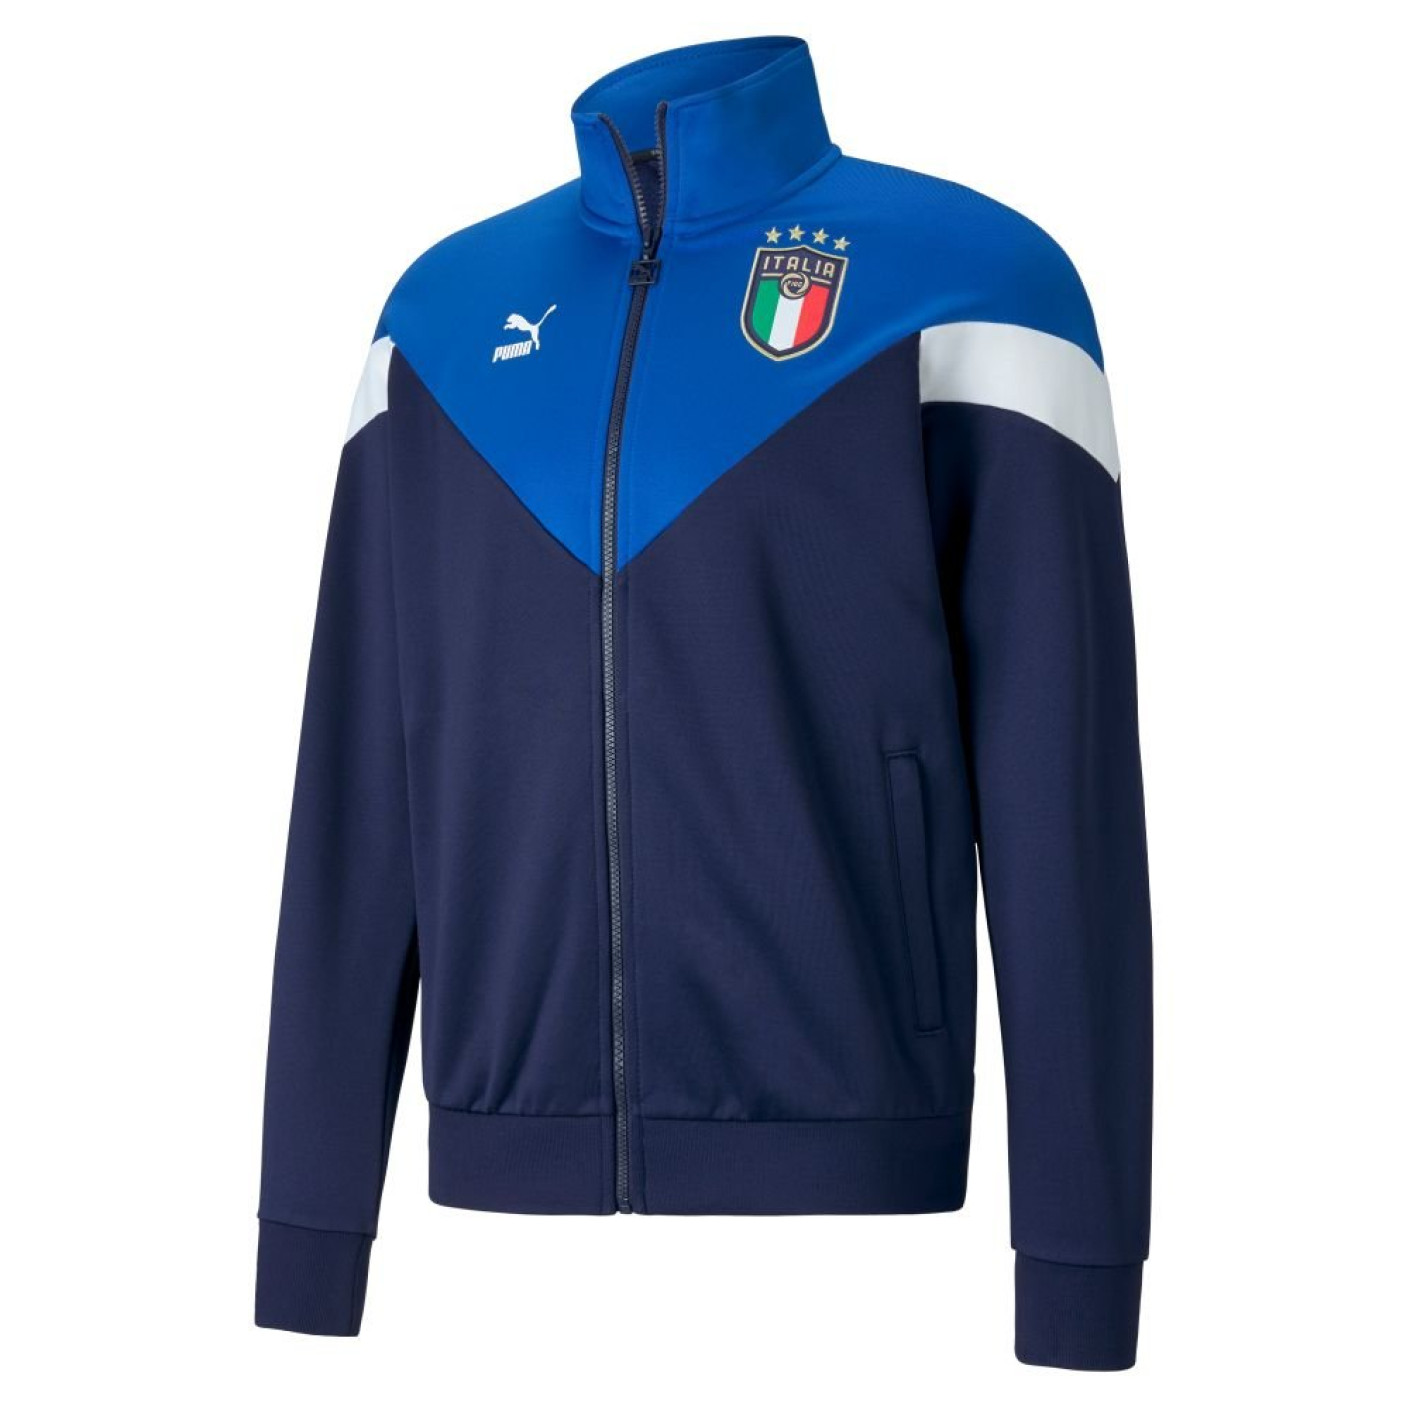 PUMA Italie Iconic MCS Trainingsjack 2020 Blauw